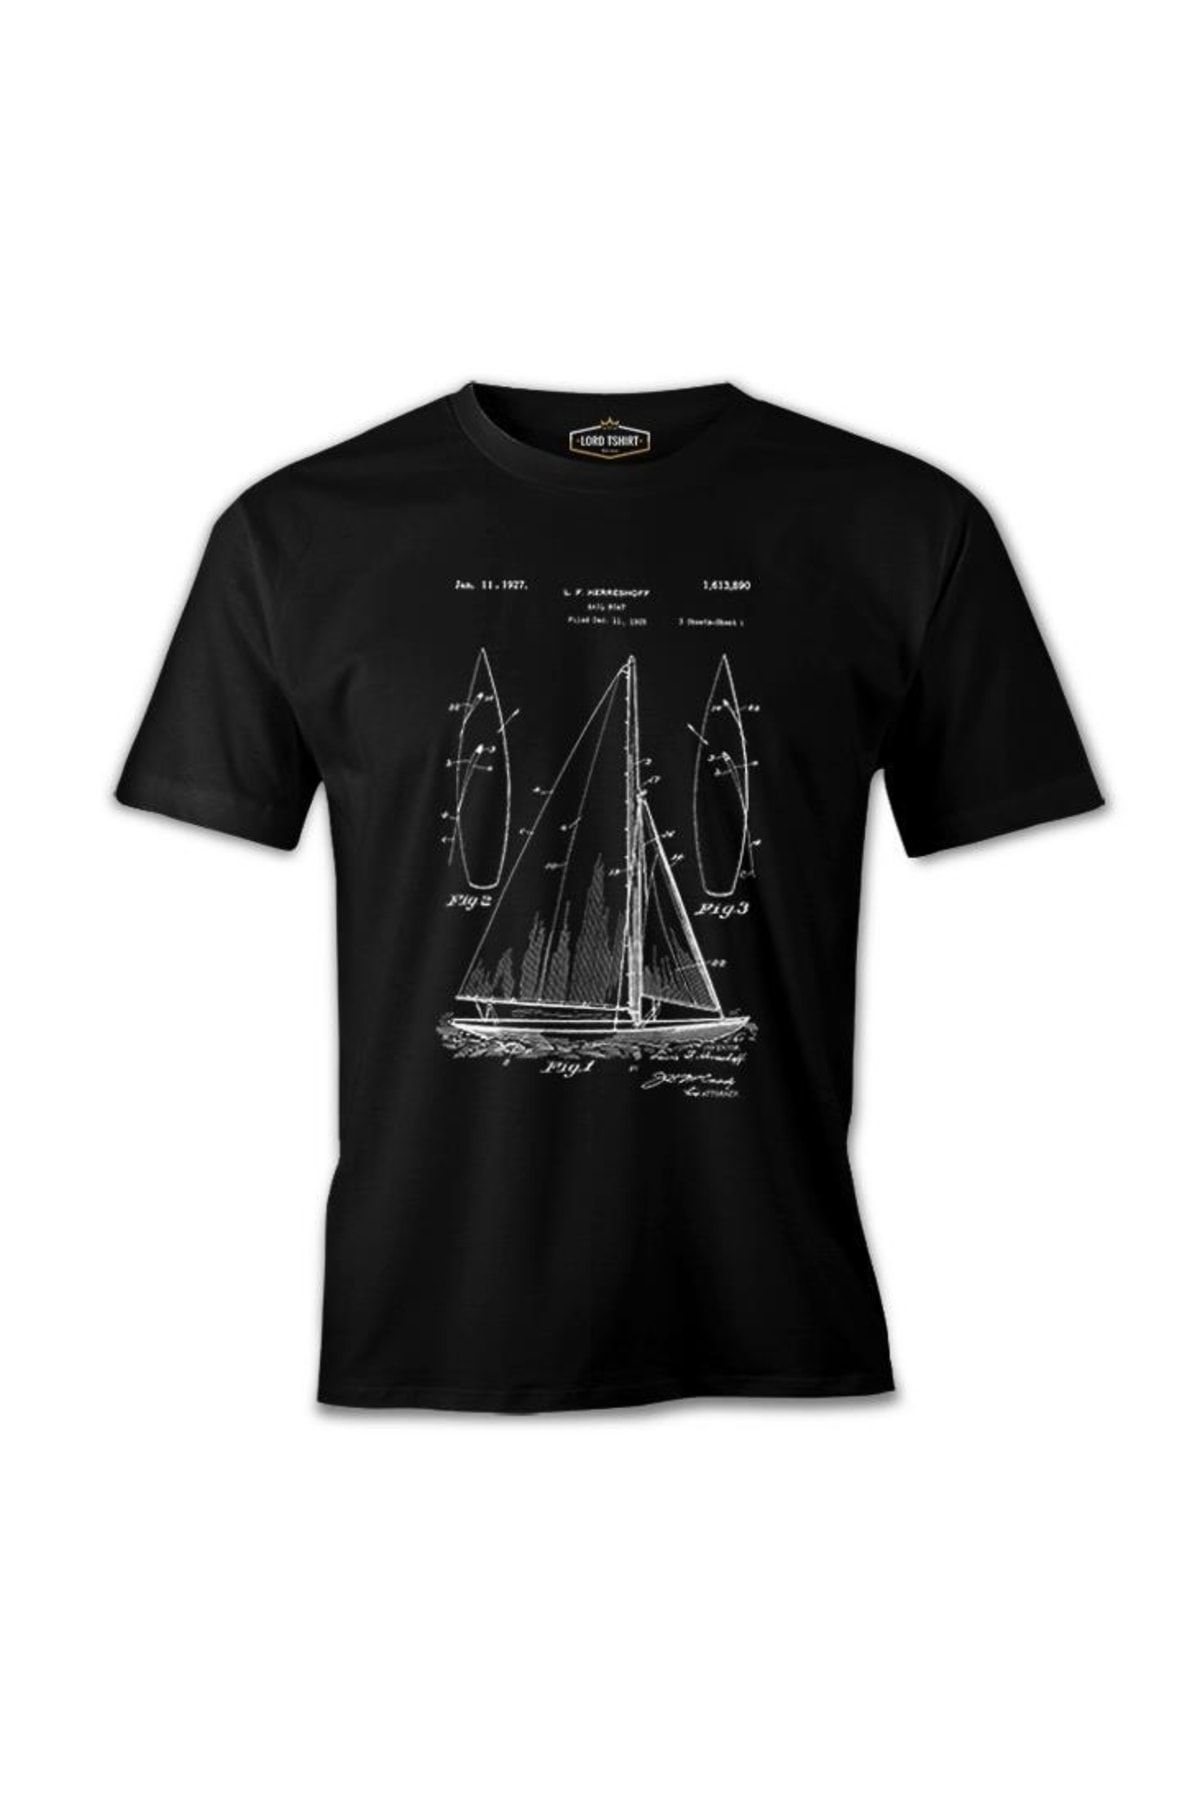 Lord T-Shirt Yat Kulübü - Sail Boat Siyah Erkek Tshirt